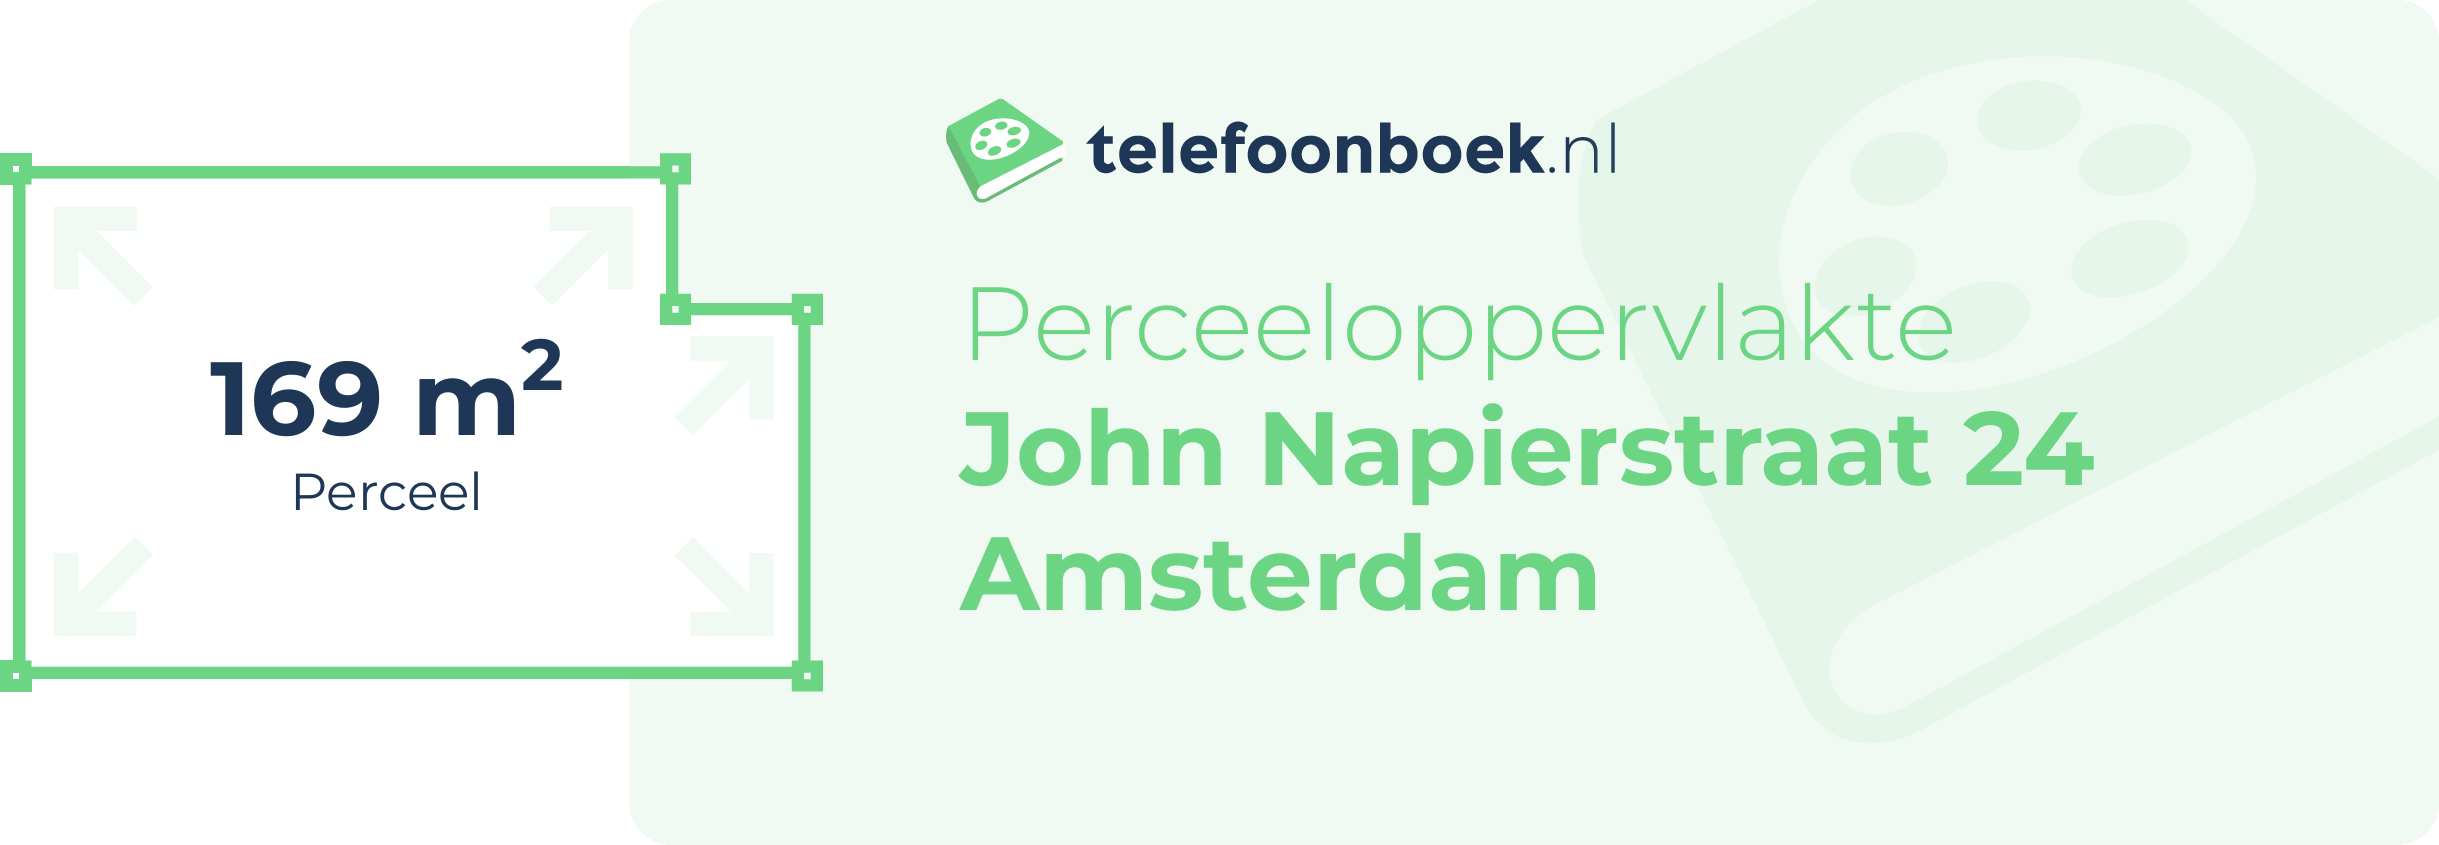 Perceeloppervlakte John Napierstraat 24 Amsterdam